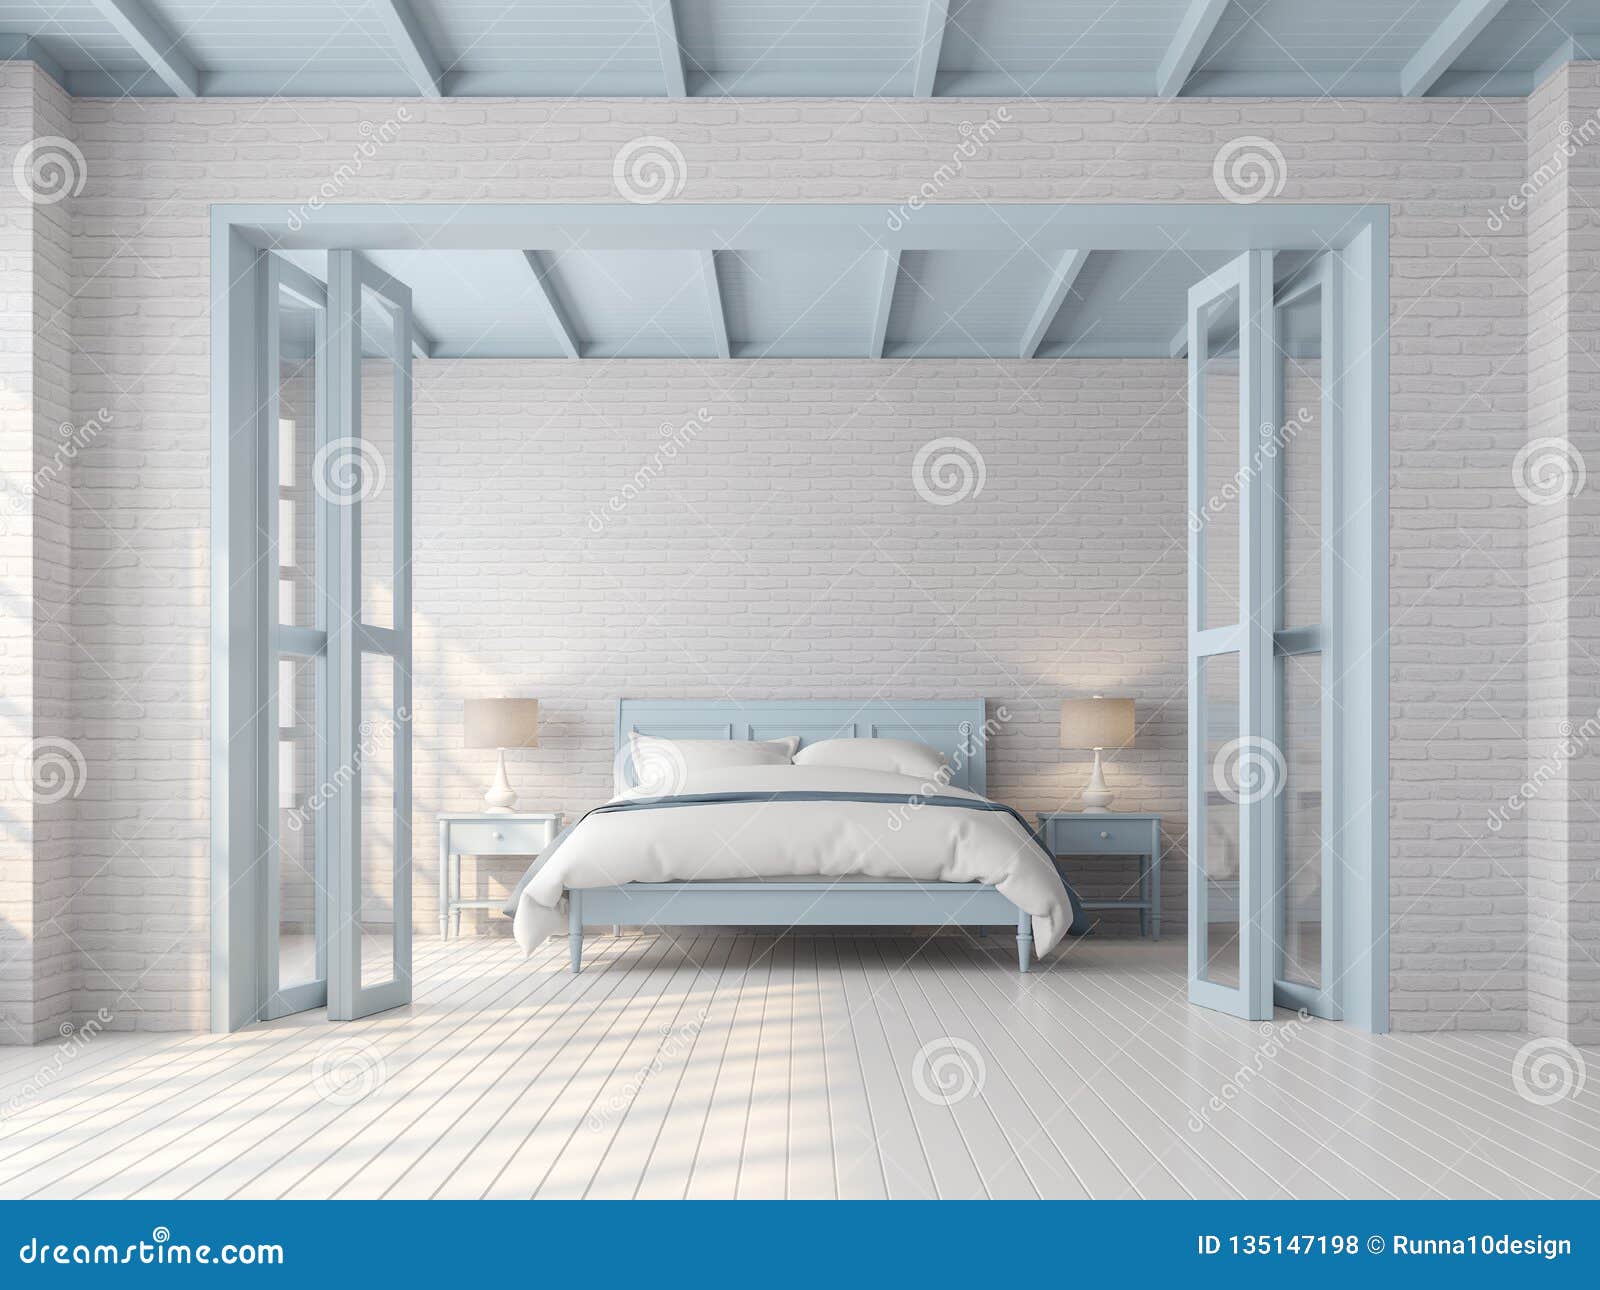 Vintage Bedroom With Blue Pastel Color 3d Render Stock